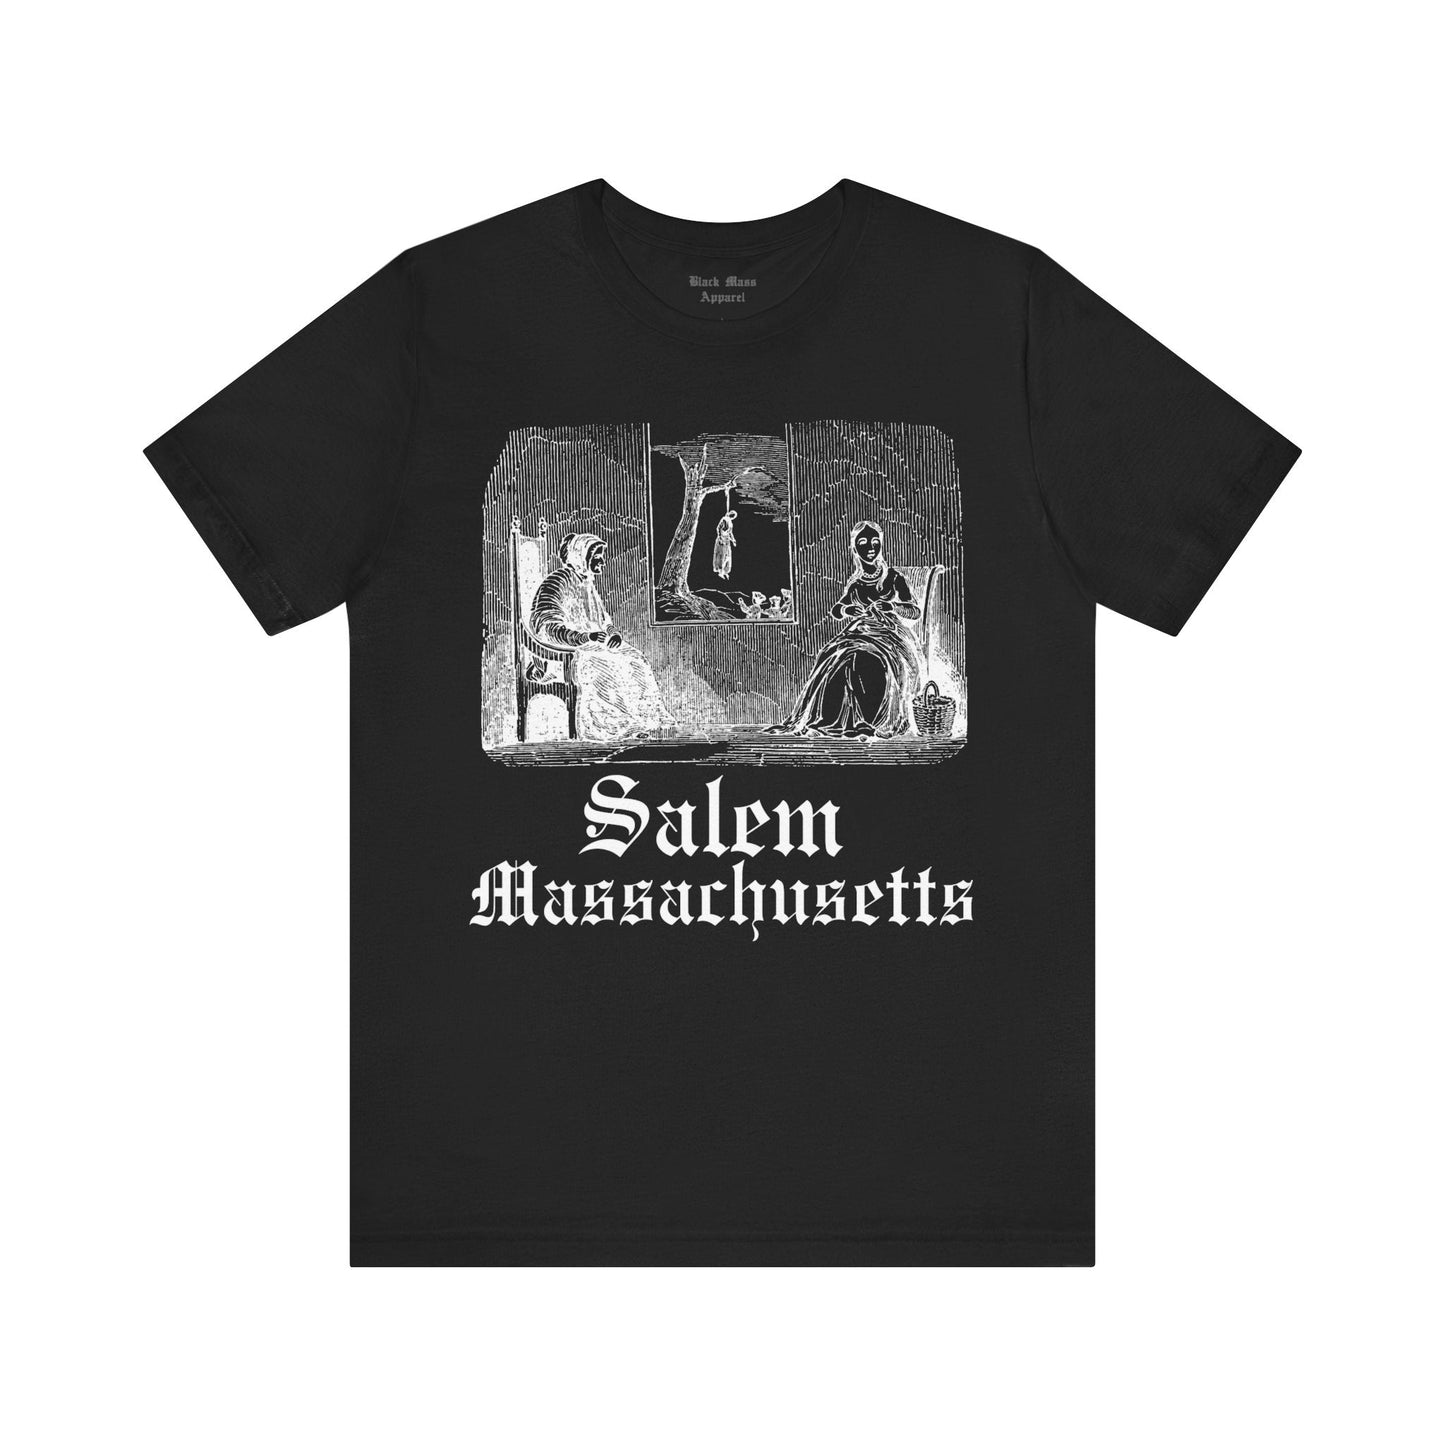 Salem Massachusetts - Black Mass Apparel - T-Shirt